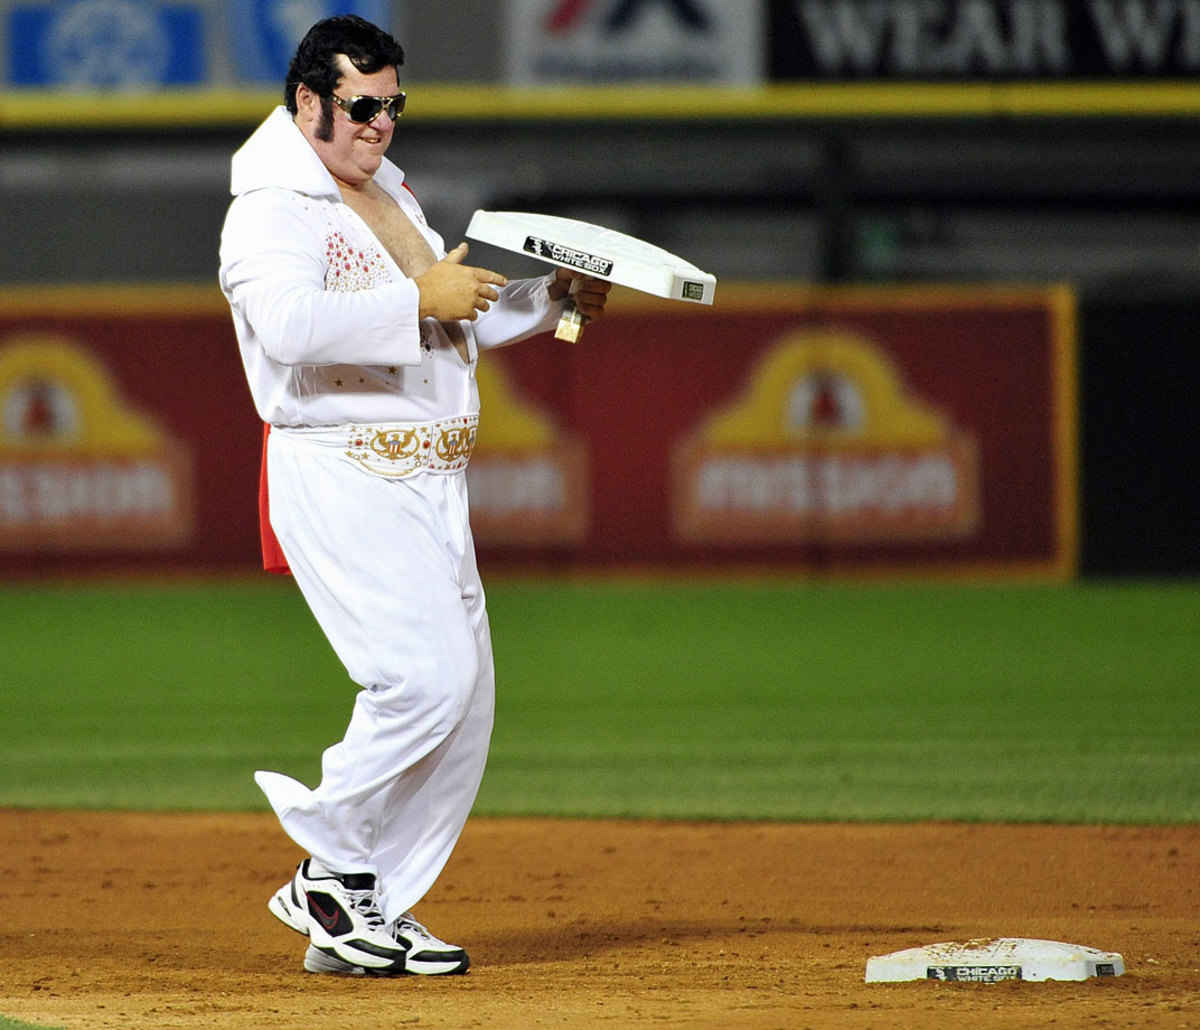 2014-Elvis-baseball-fan.jpg